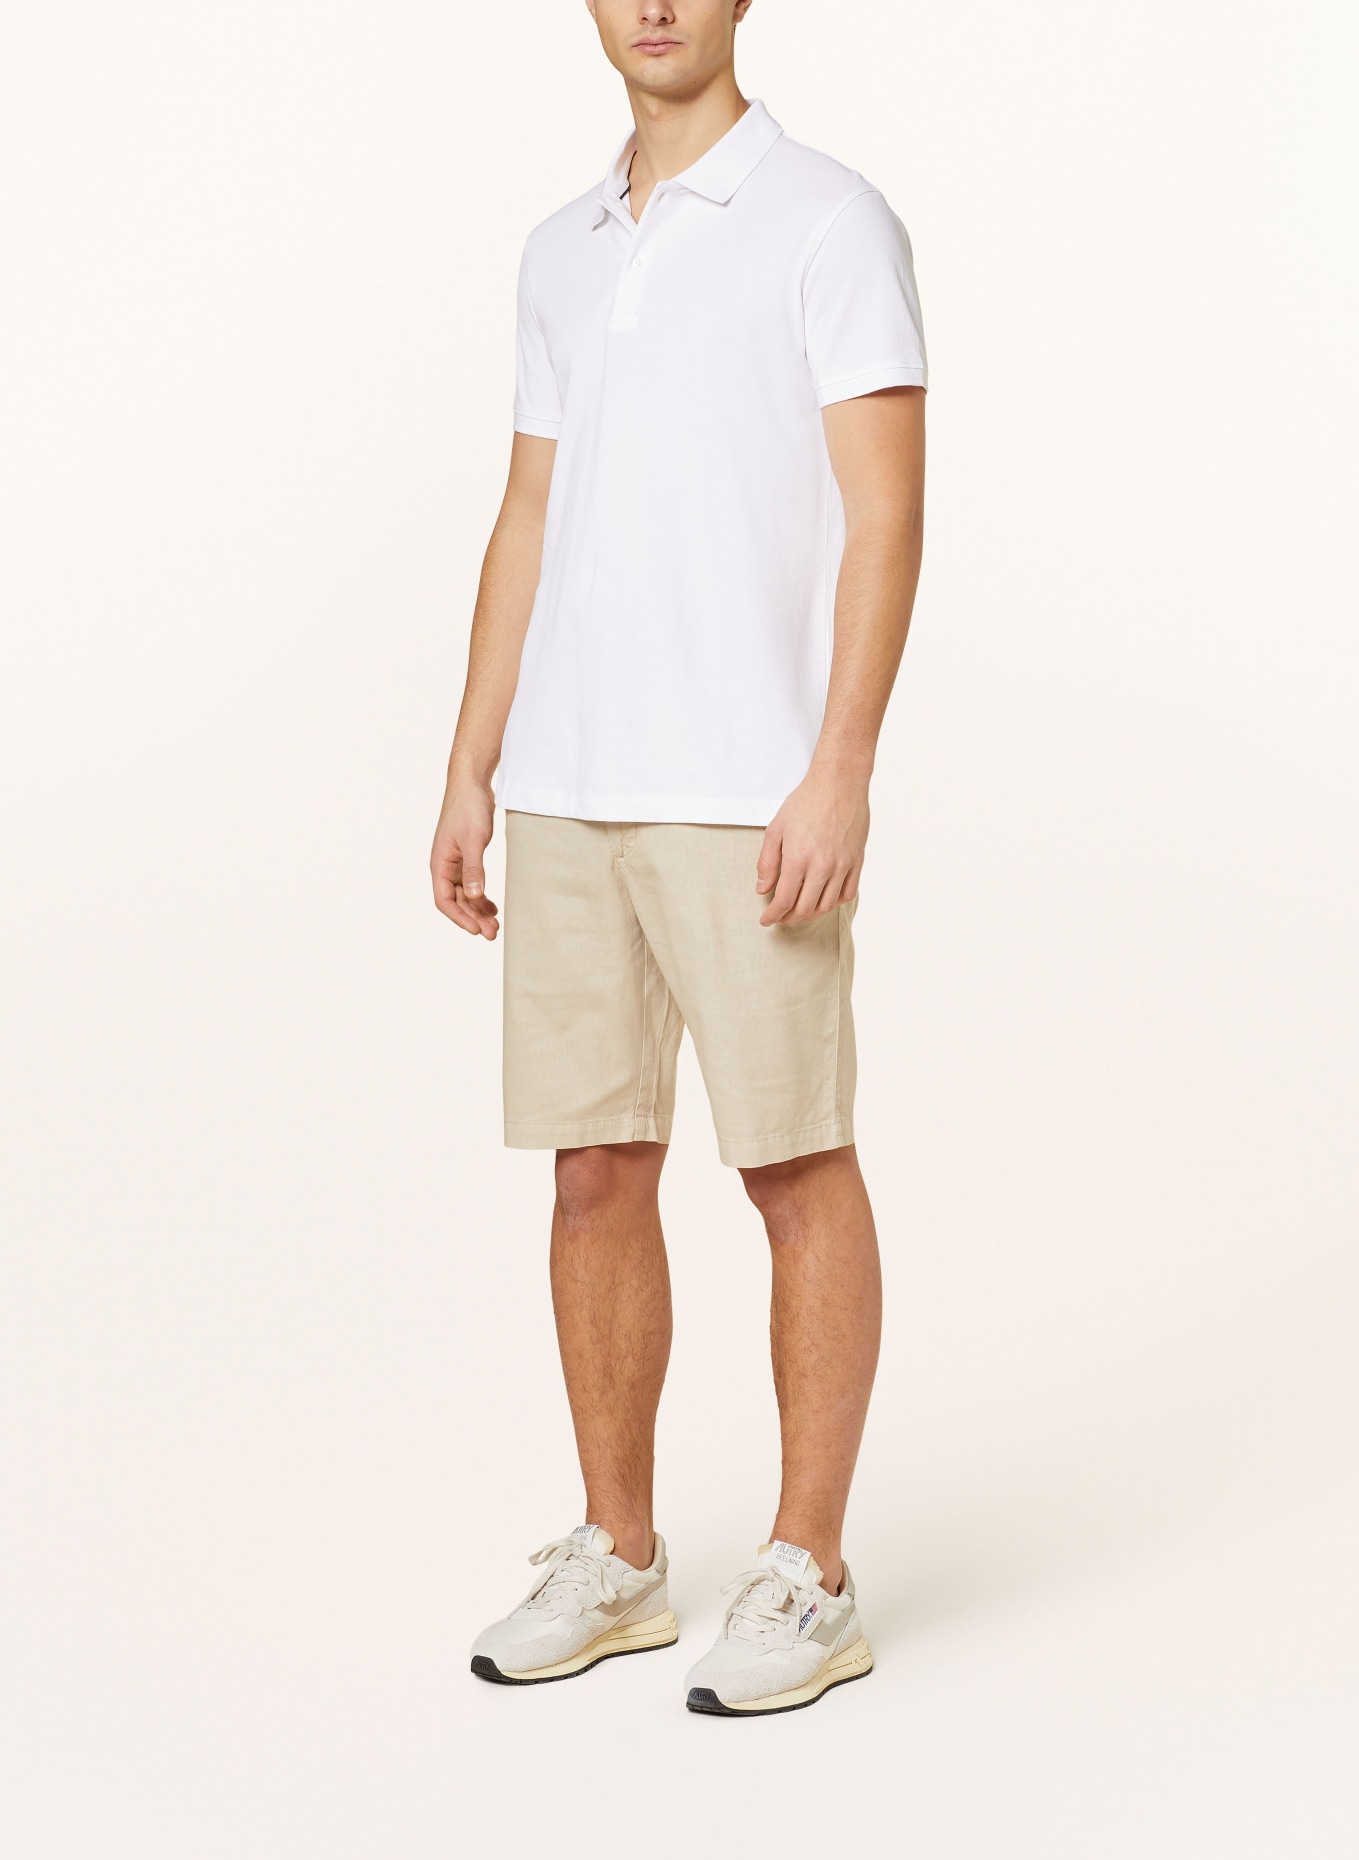 STROKESMAN'S Piqué polo shirt, Color: WHITE (Image 2)